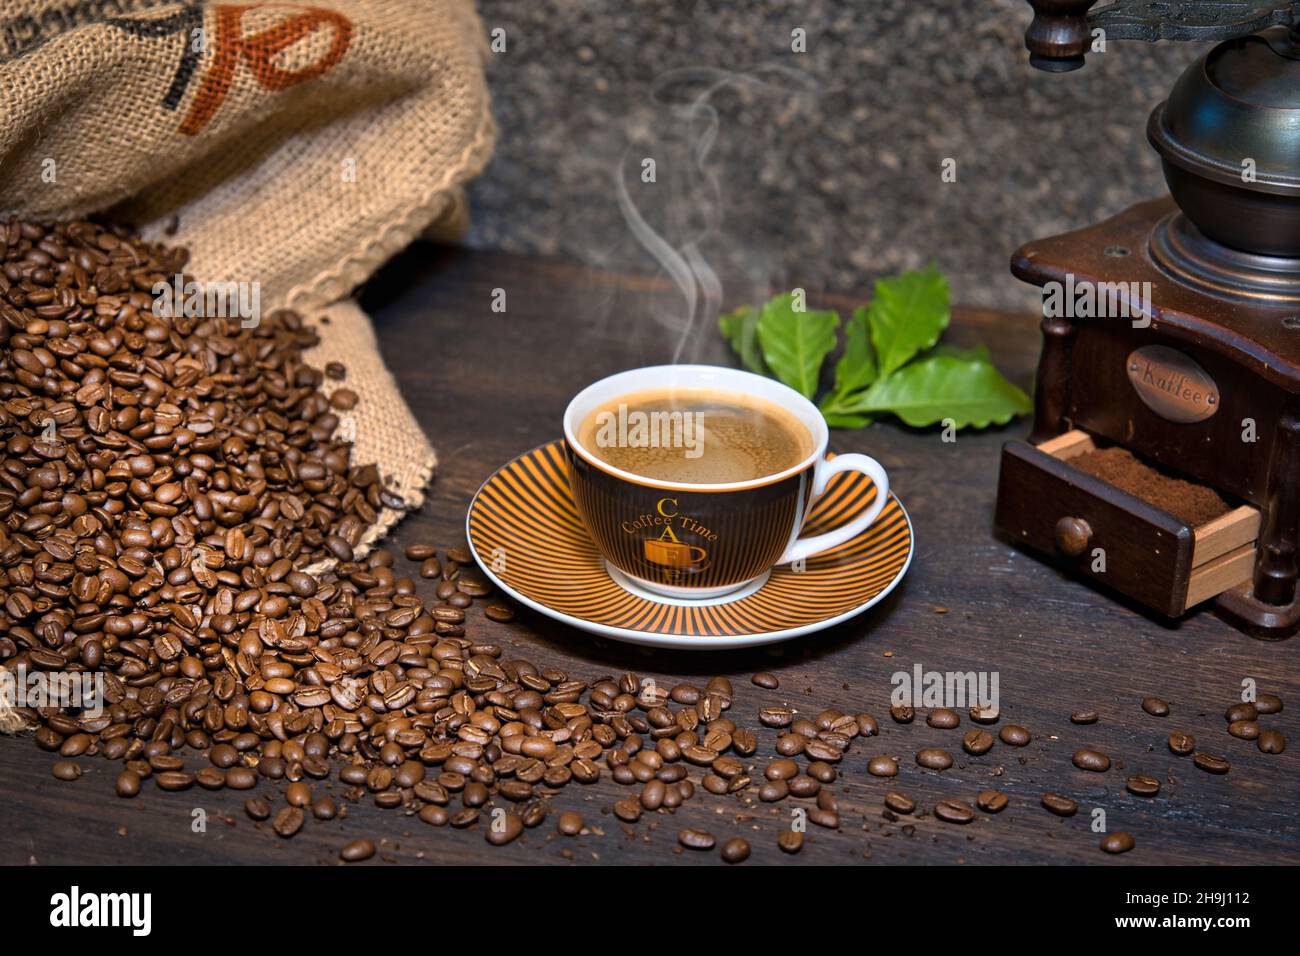 Kaffee Komposition mit dampfender Kaffeetasse, Kaffeebohnen in Kaffeesack, historischer Kaffeemühle und Kaffeeblätter auf einem Holztisch Stock Photo